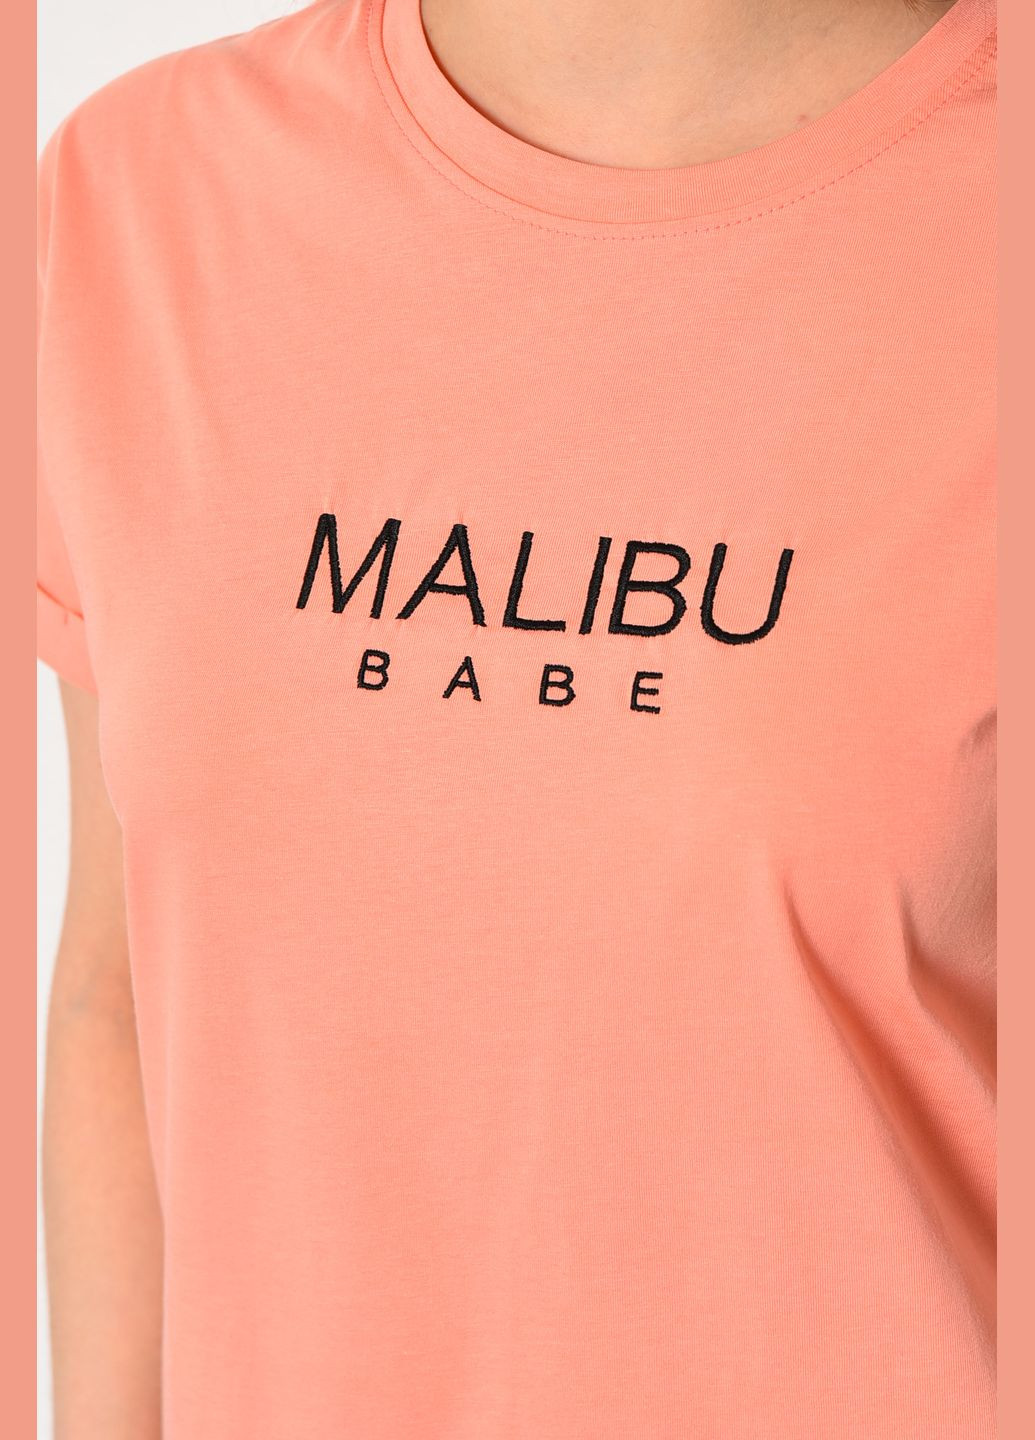 Коралловая летняя футболка женская кораллового цвета Let's Shop